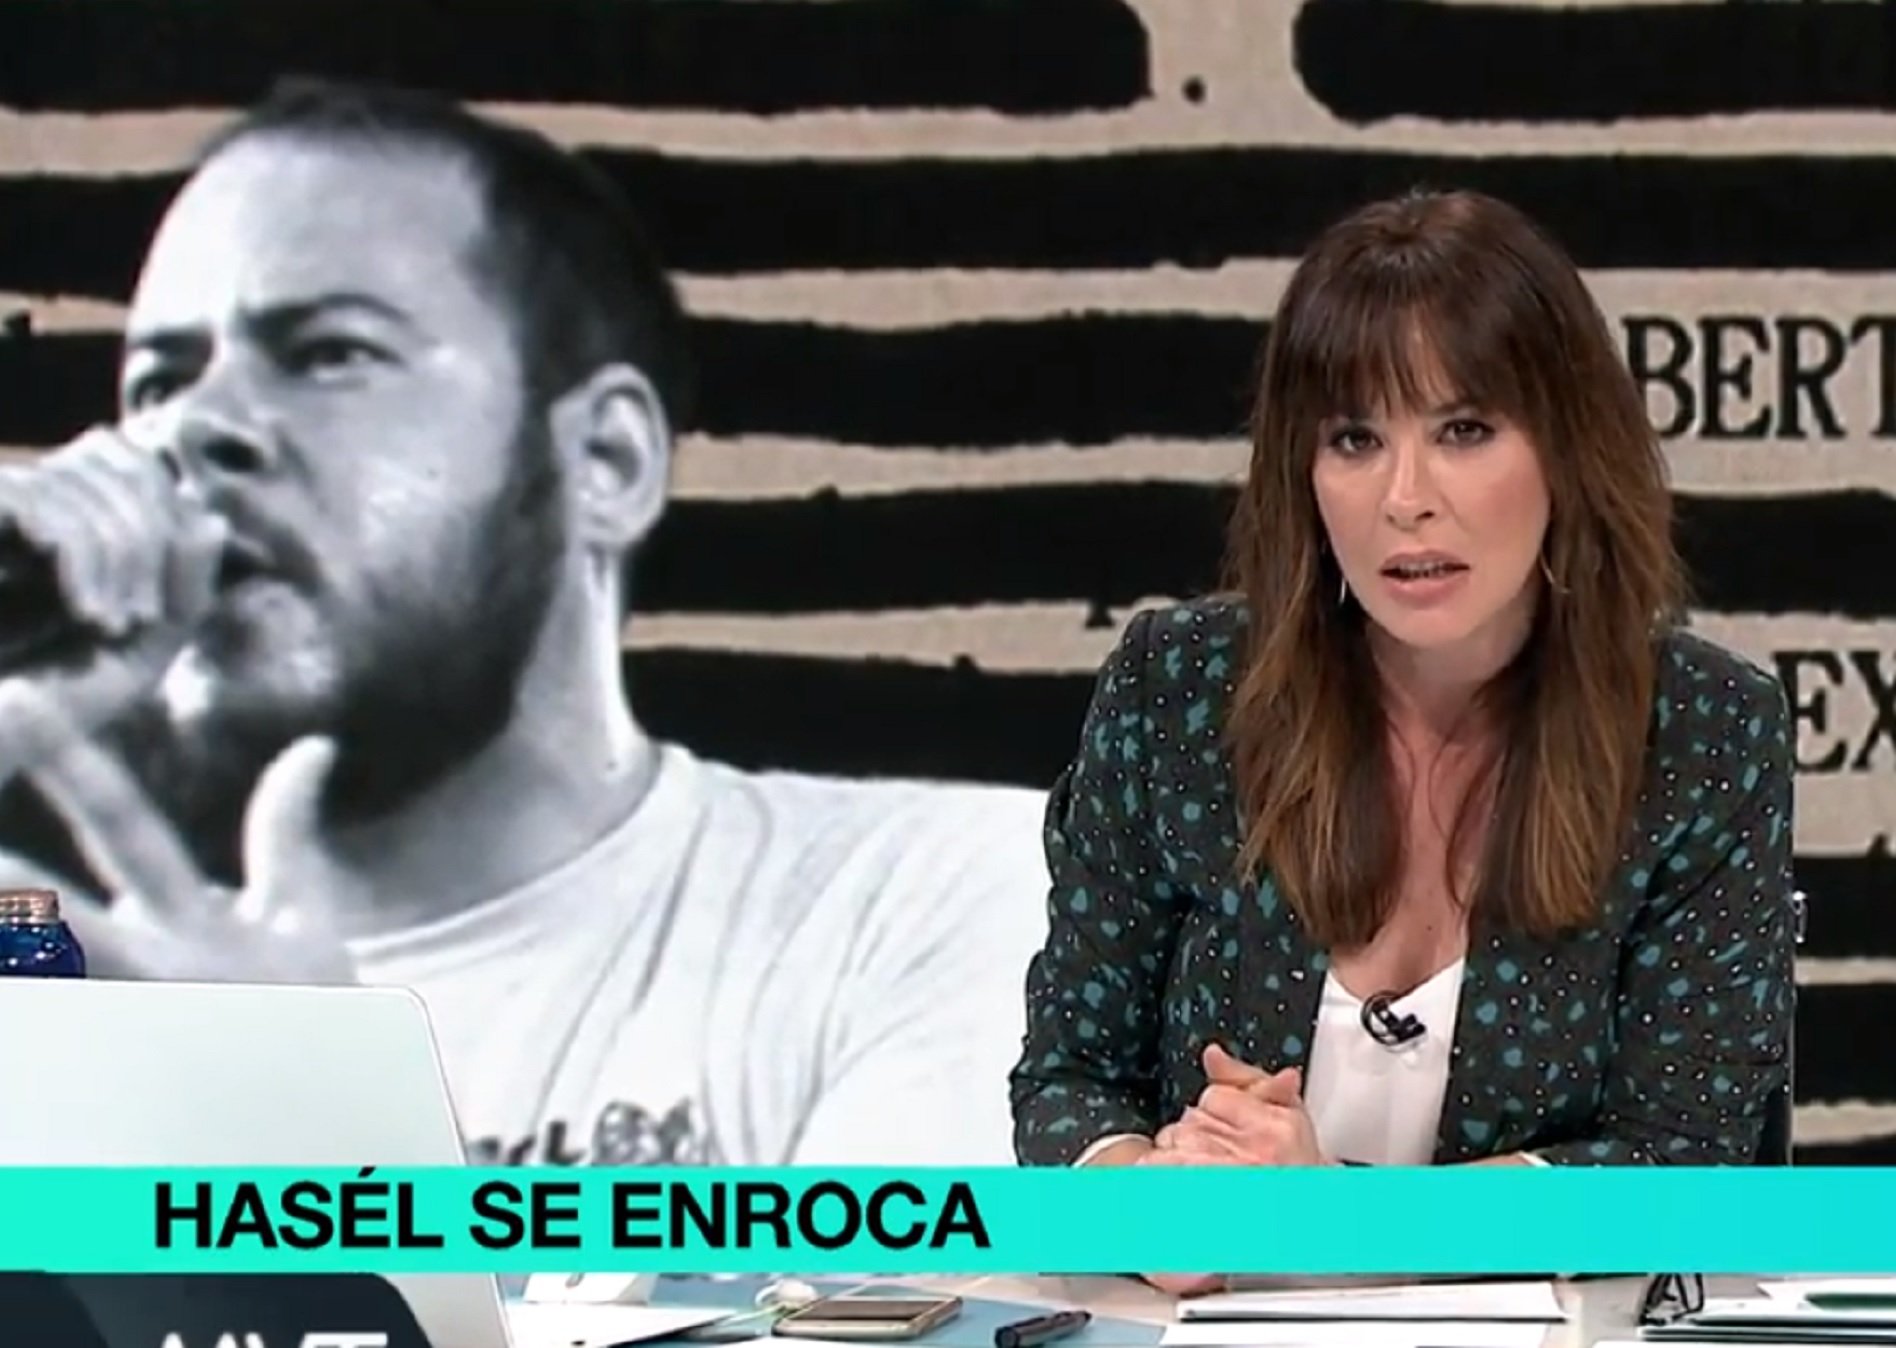 La Sexta titula "Pablo Hasel se enroca". Jair Domínguez explota "Benvinguts a...